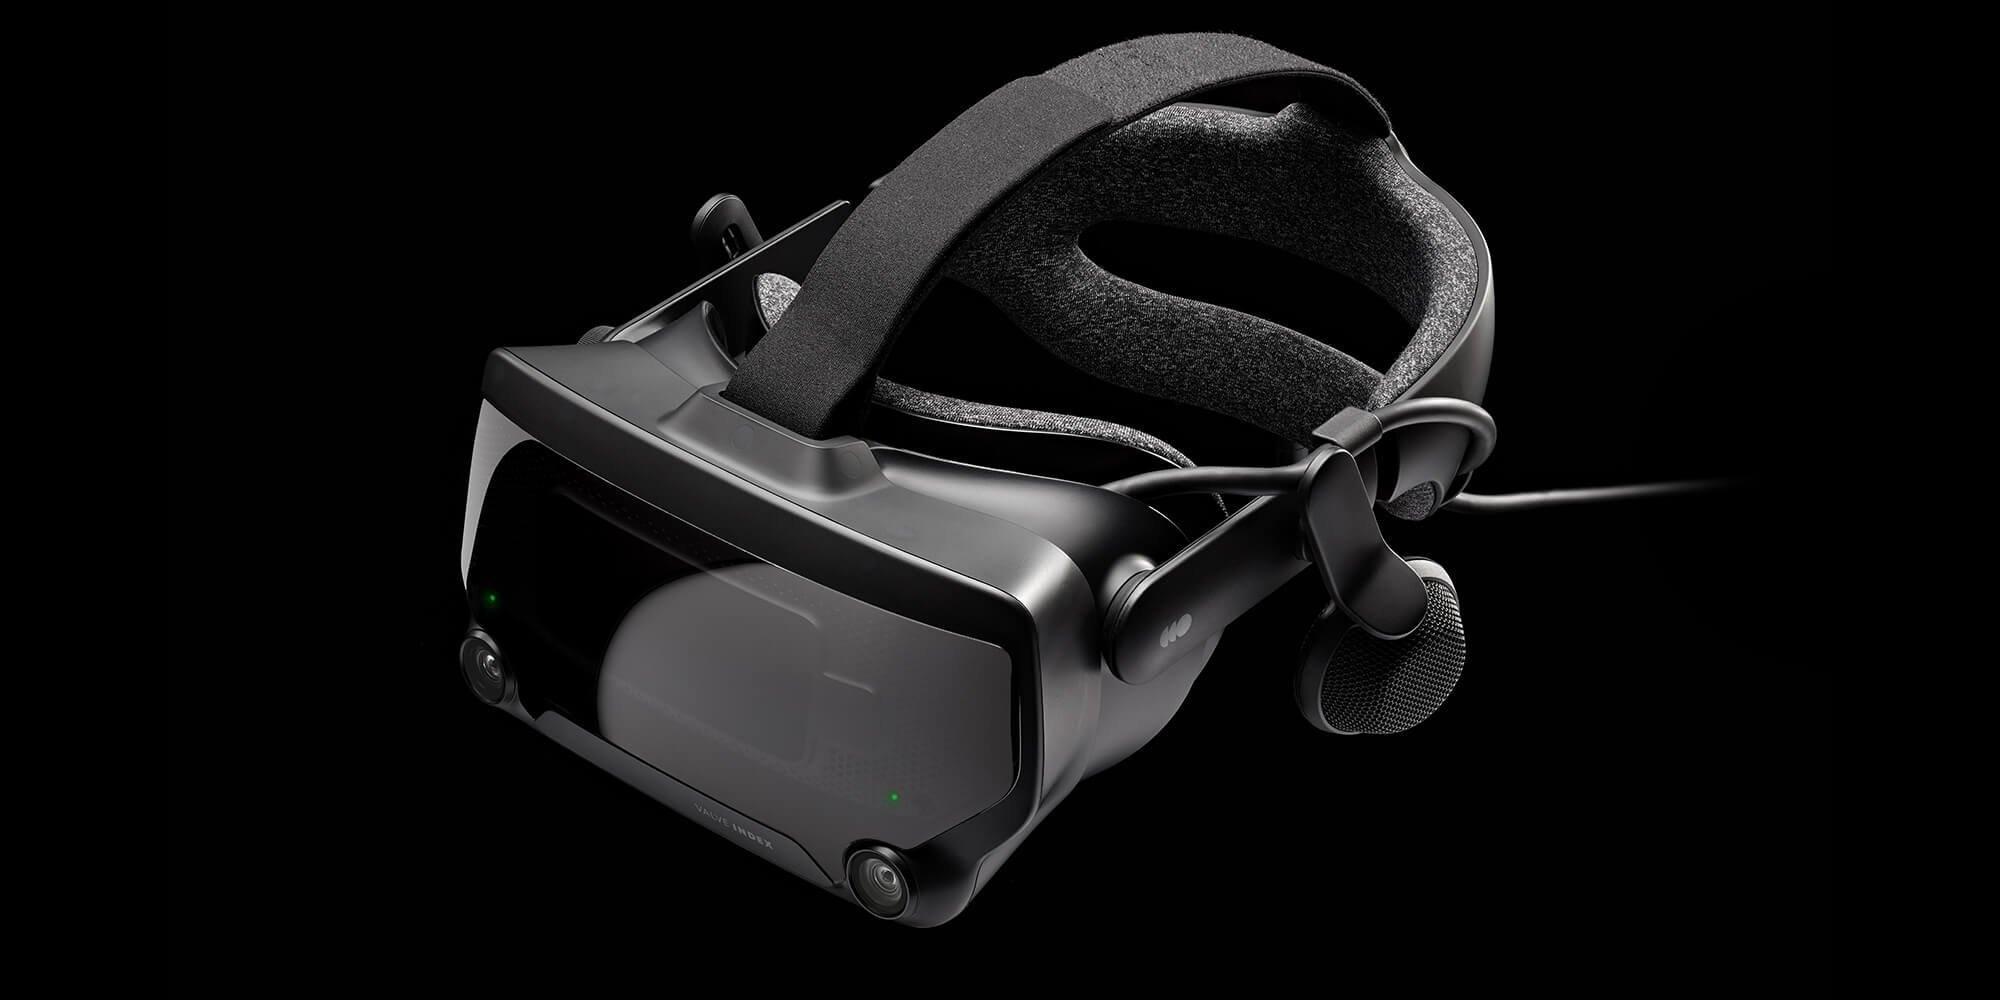 værdi privatliv Eastern Valve Index VR Headset | GameStop